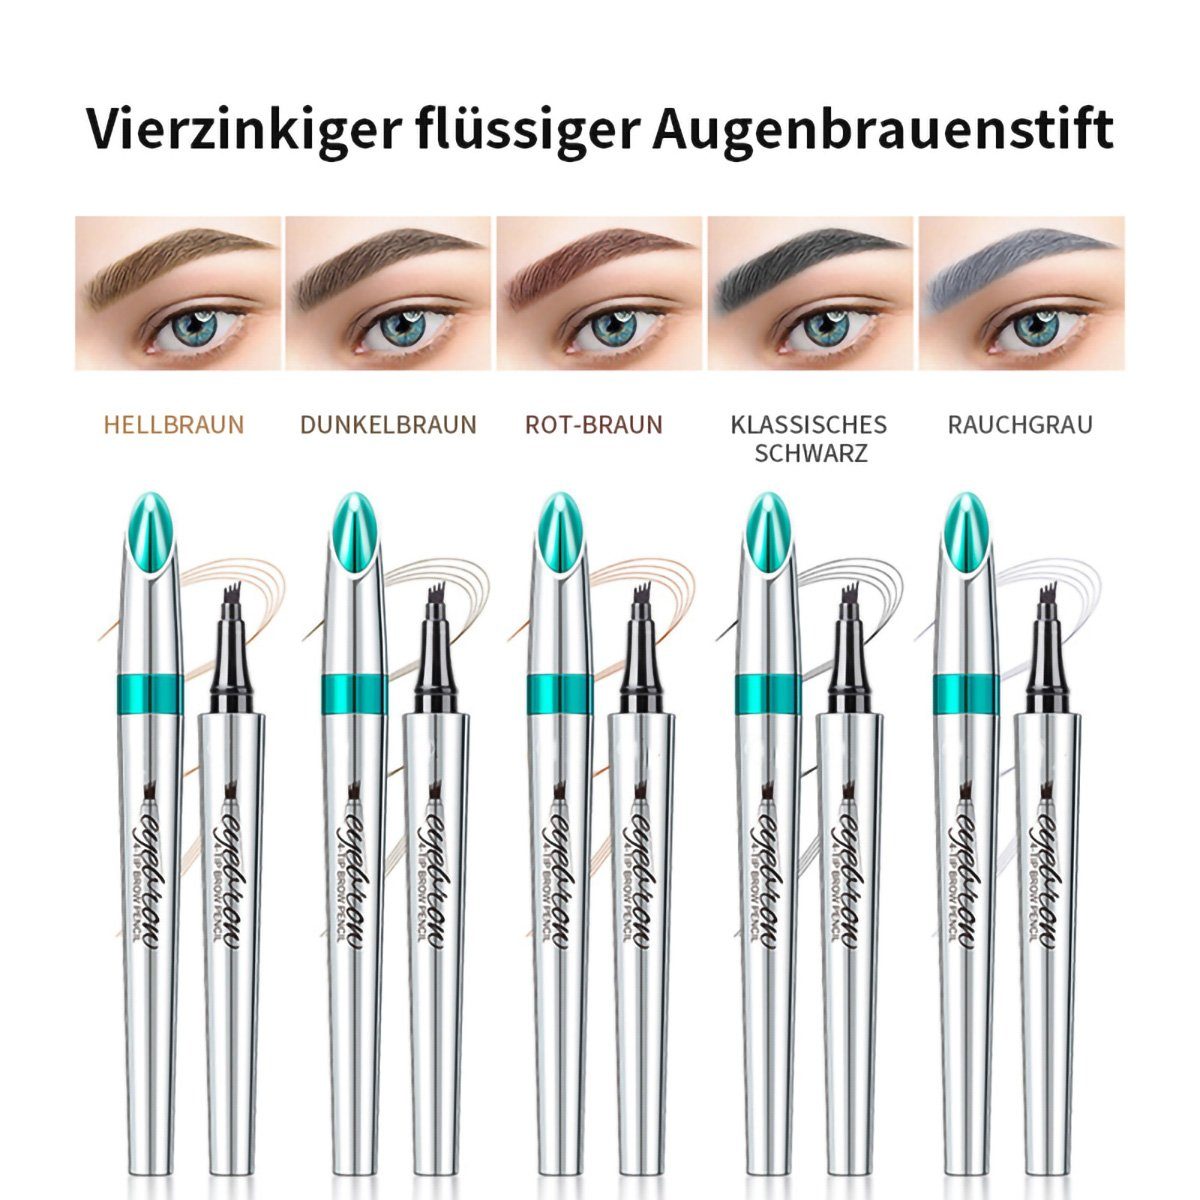 yozhiqu Augenbrauen-Stift 5 Stück vierzackiger flüssiger farberzeugend Augenbrauenstift, 1-tlg., wasserfest, langanhaltend, wilde Simulation 4D-Augenbrauenstift